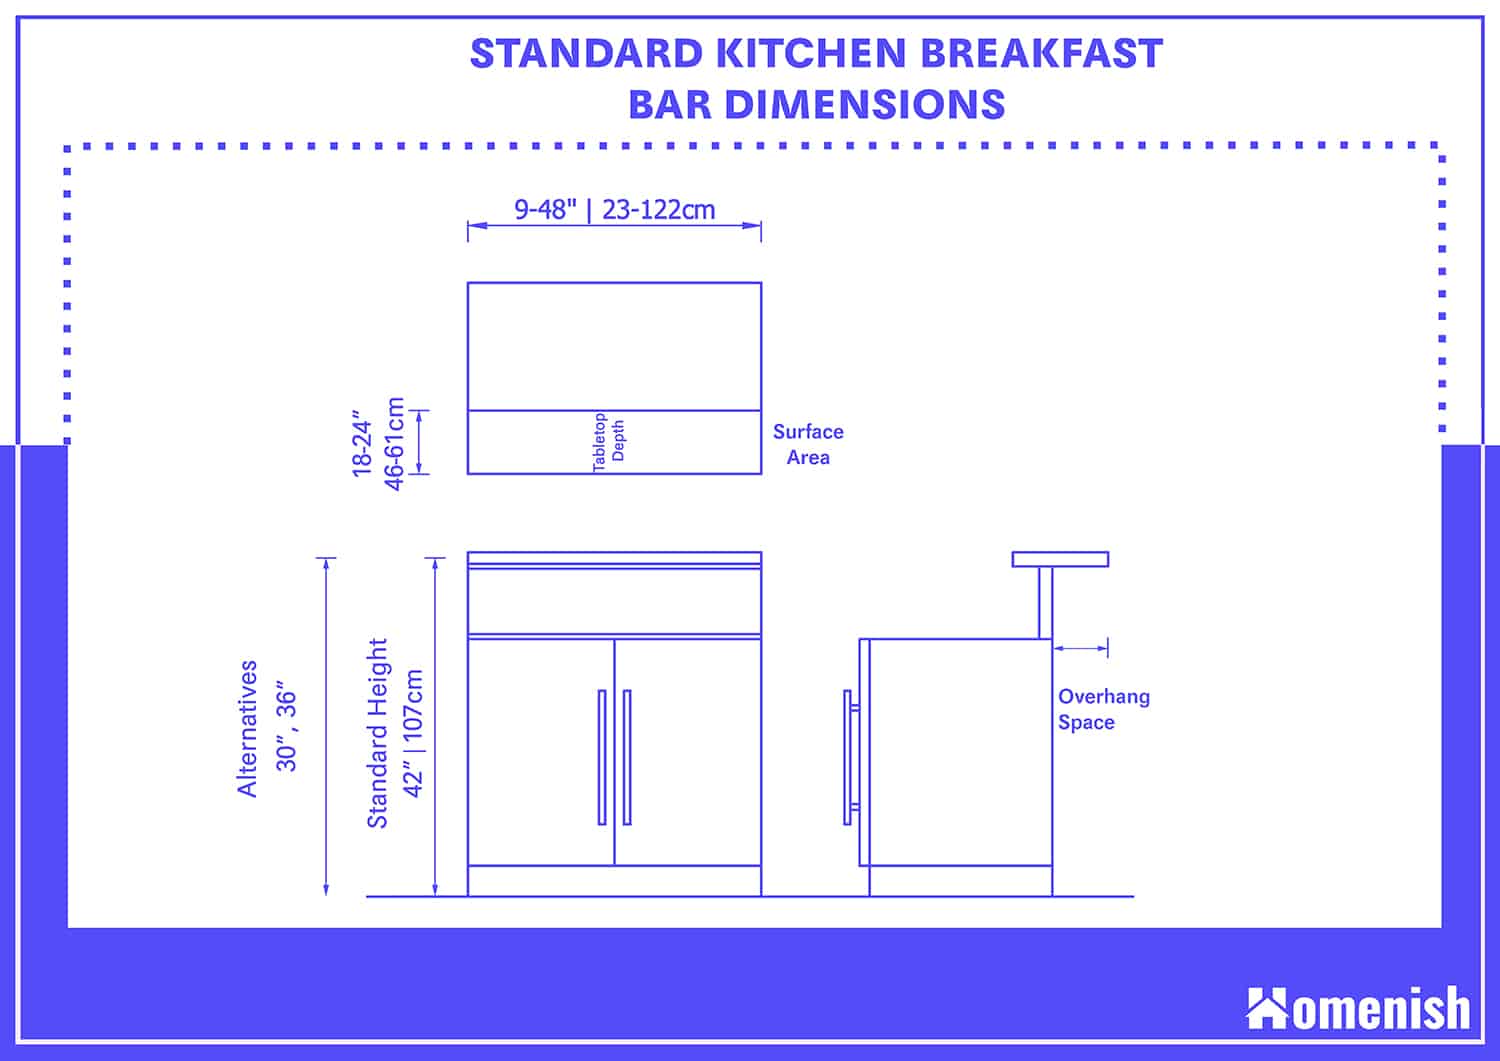 標準廚房早餐吧高度